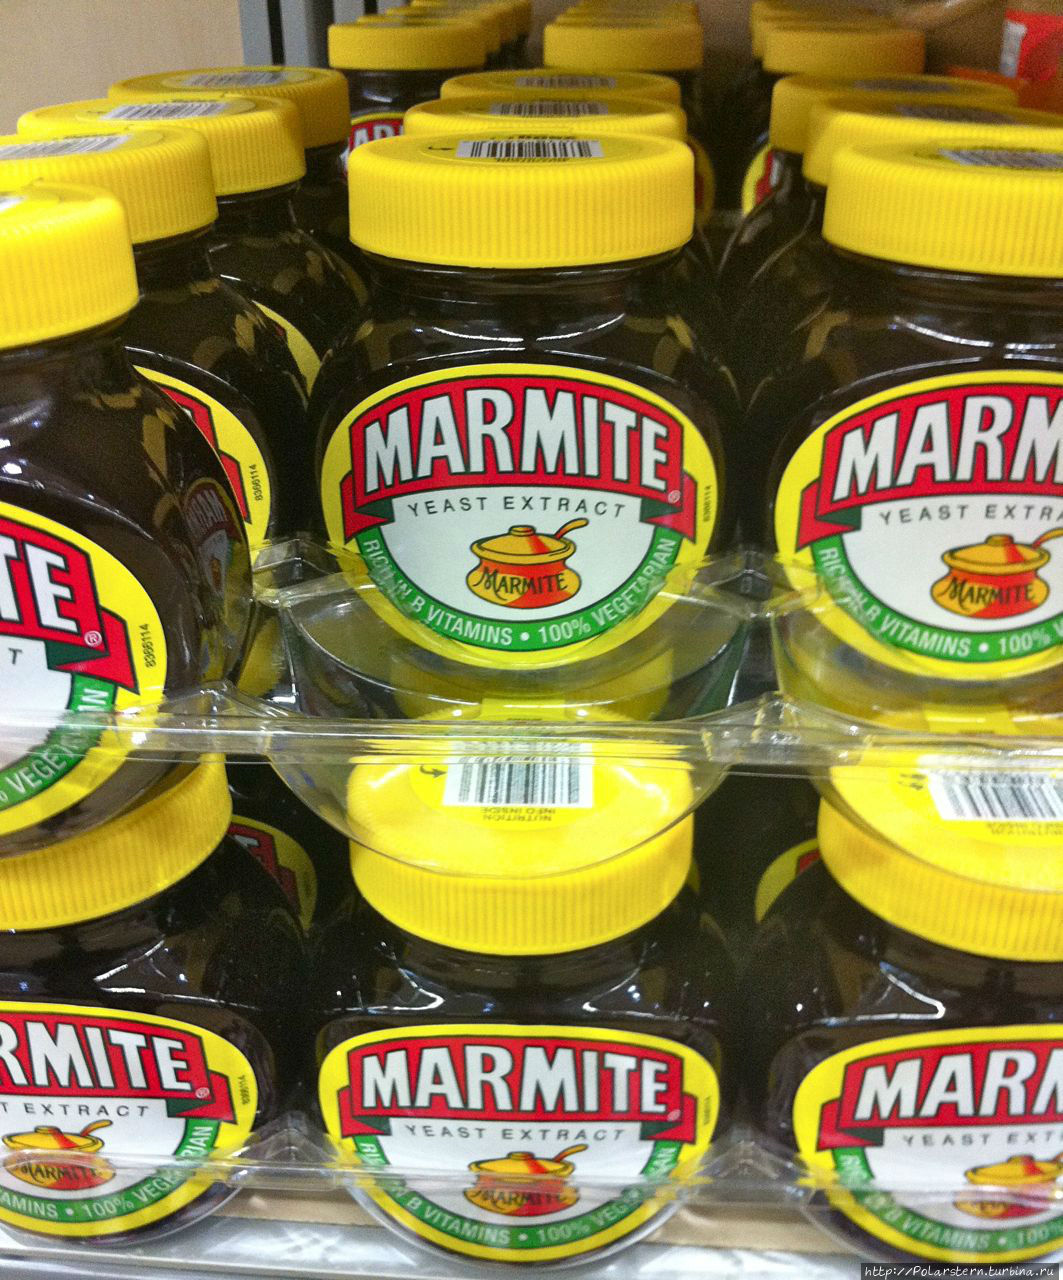 Marmite — название, которое знакомо любому англичанину с детства. Этот продукт настолько близок британцам, что сопровождает их и во время учебы в школе, и службы в армии. Это дрожжевой экстрат в виде пасты, которую обычно едят на завтрак в виде сендвичей. По цвету паста коричневого цвета, запах и вкус очень специфический и на любителя. Слоган компании-производителя как никогда правдив: Или любишь, или ненавидишь Великобритания